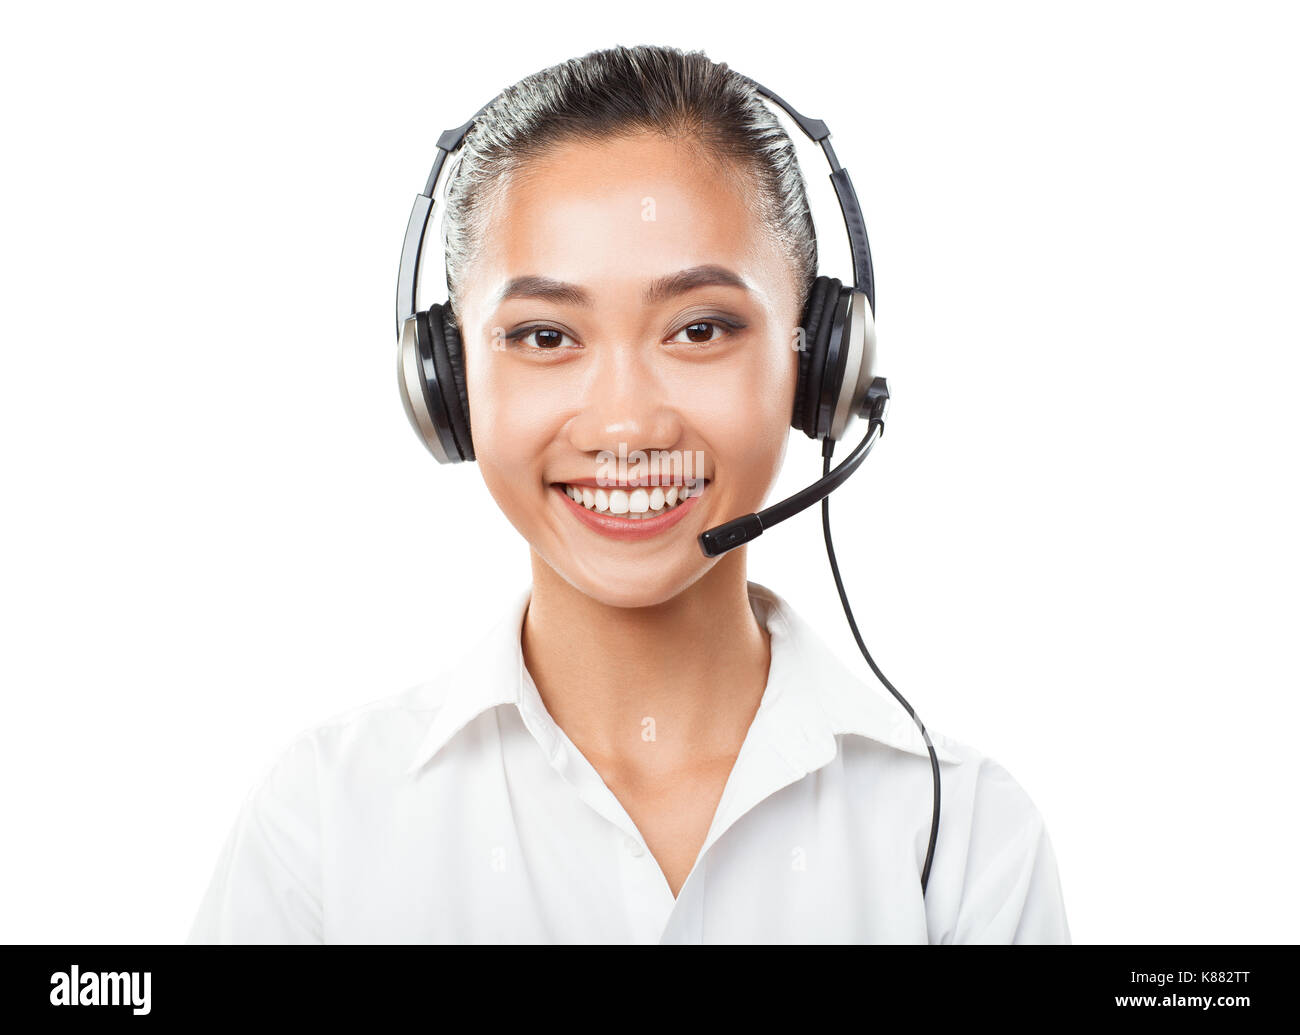 Asiatische Geschäftsfrau mit Headset-Agent, Sales Manager, Service Support, Call Center, Helpdesk oder Hot Line. Closeup Portrait von Frau mit o Stockfoto